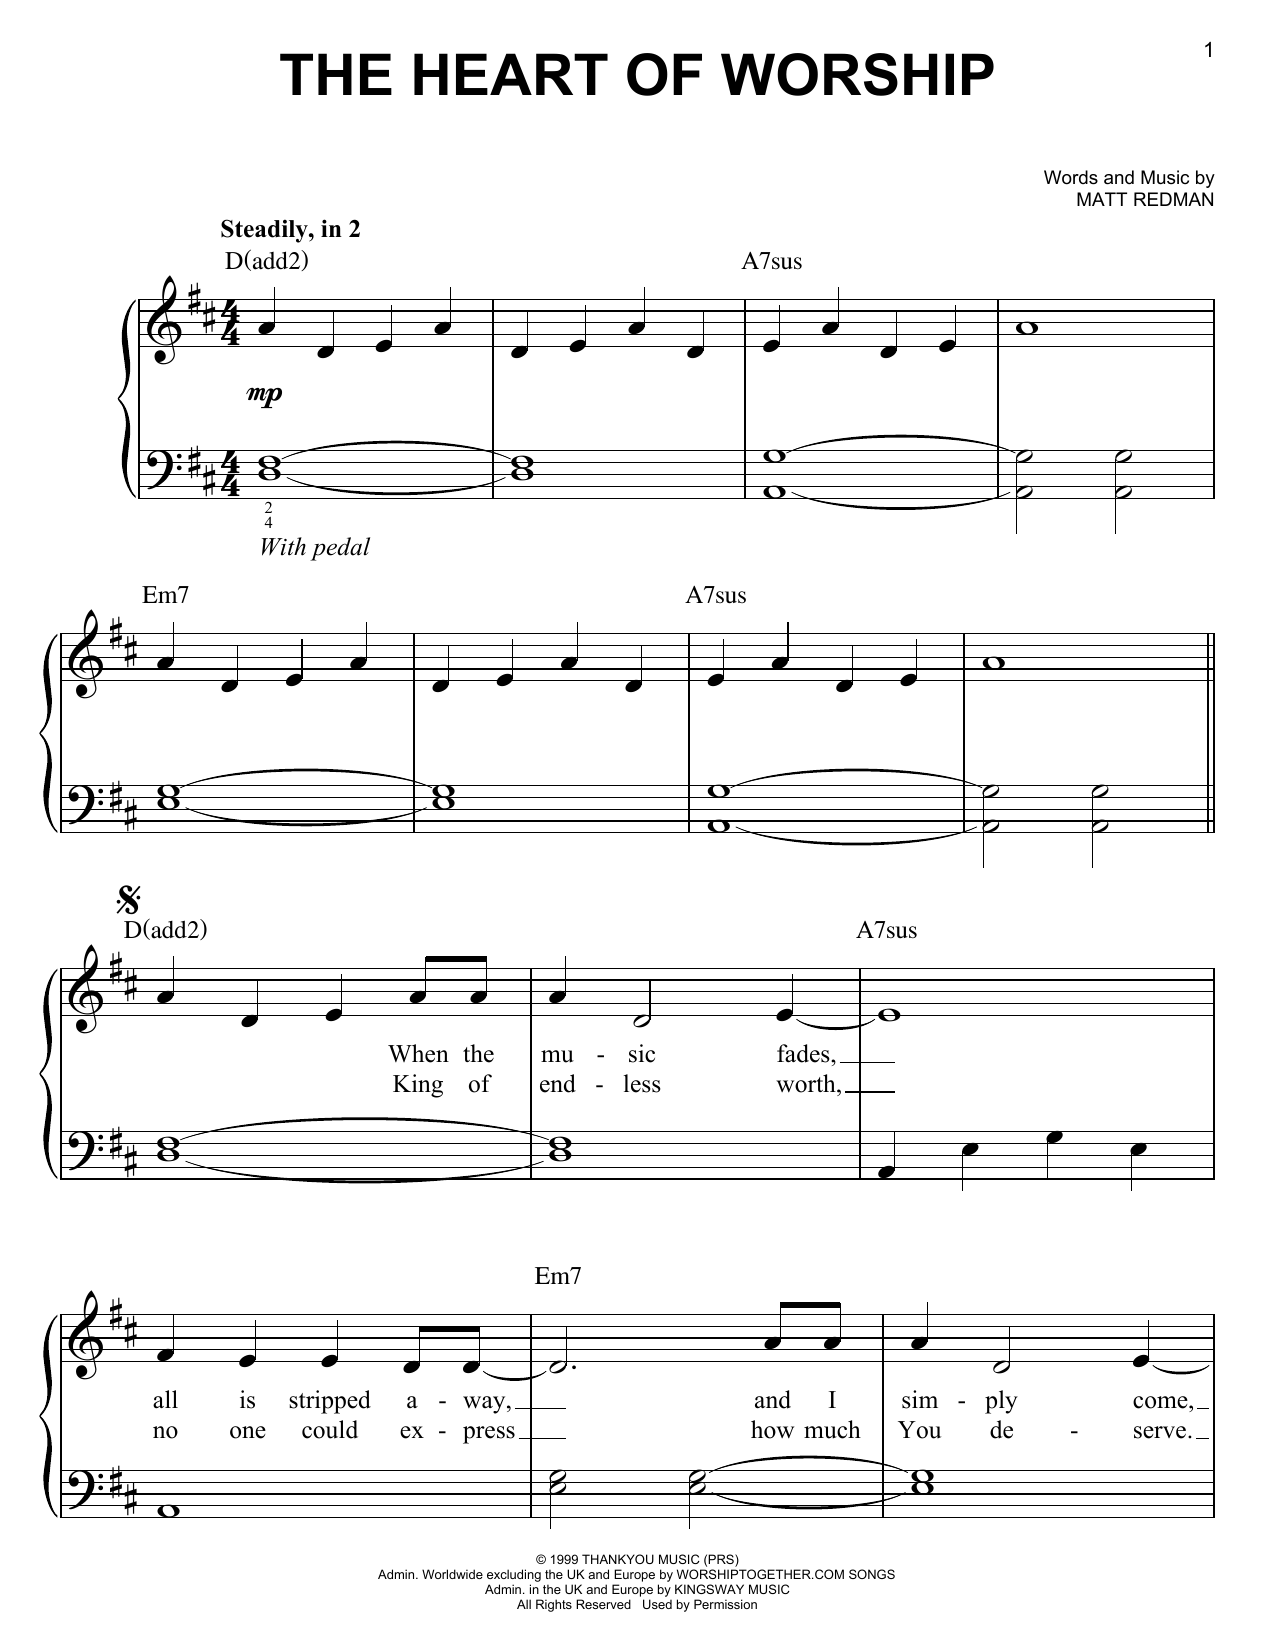 matt-redman-the-heart-of-worship-sheet-music-notes-download